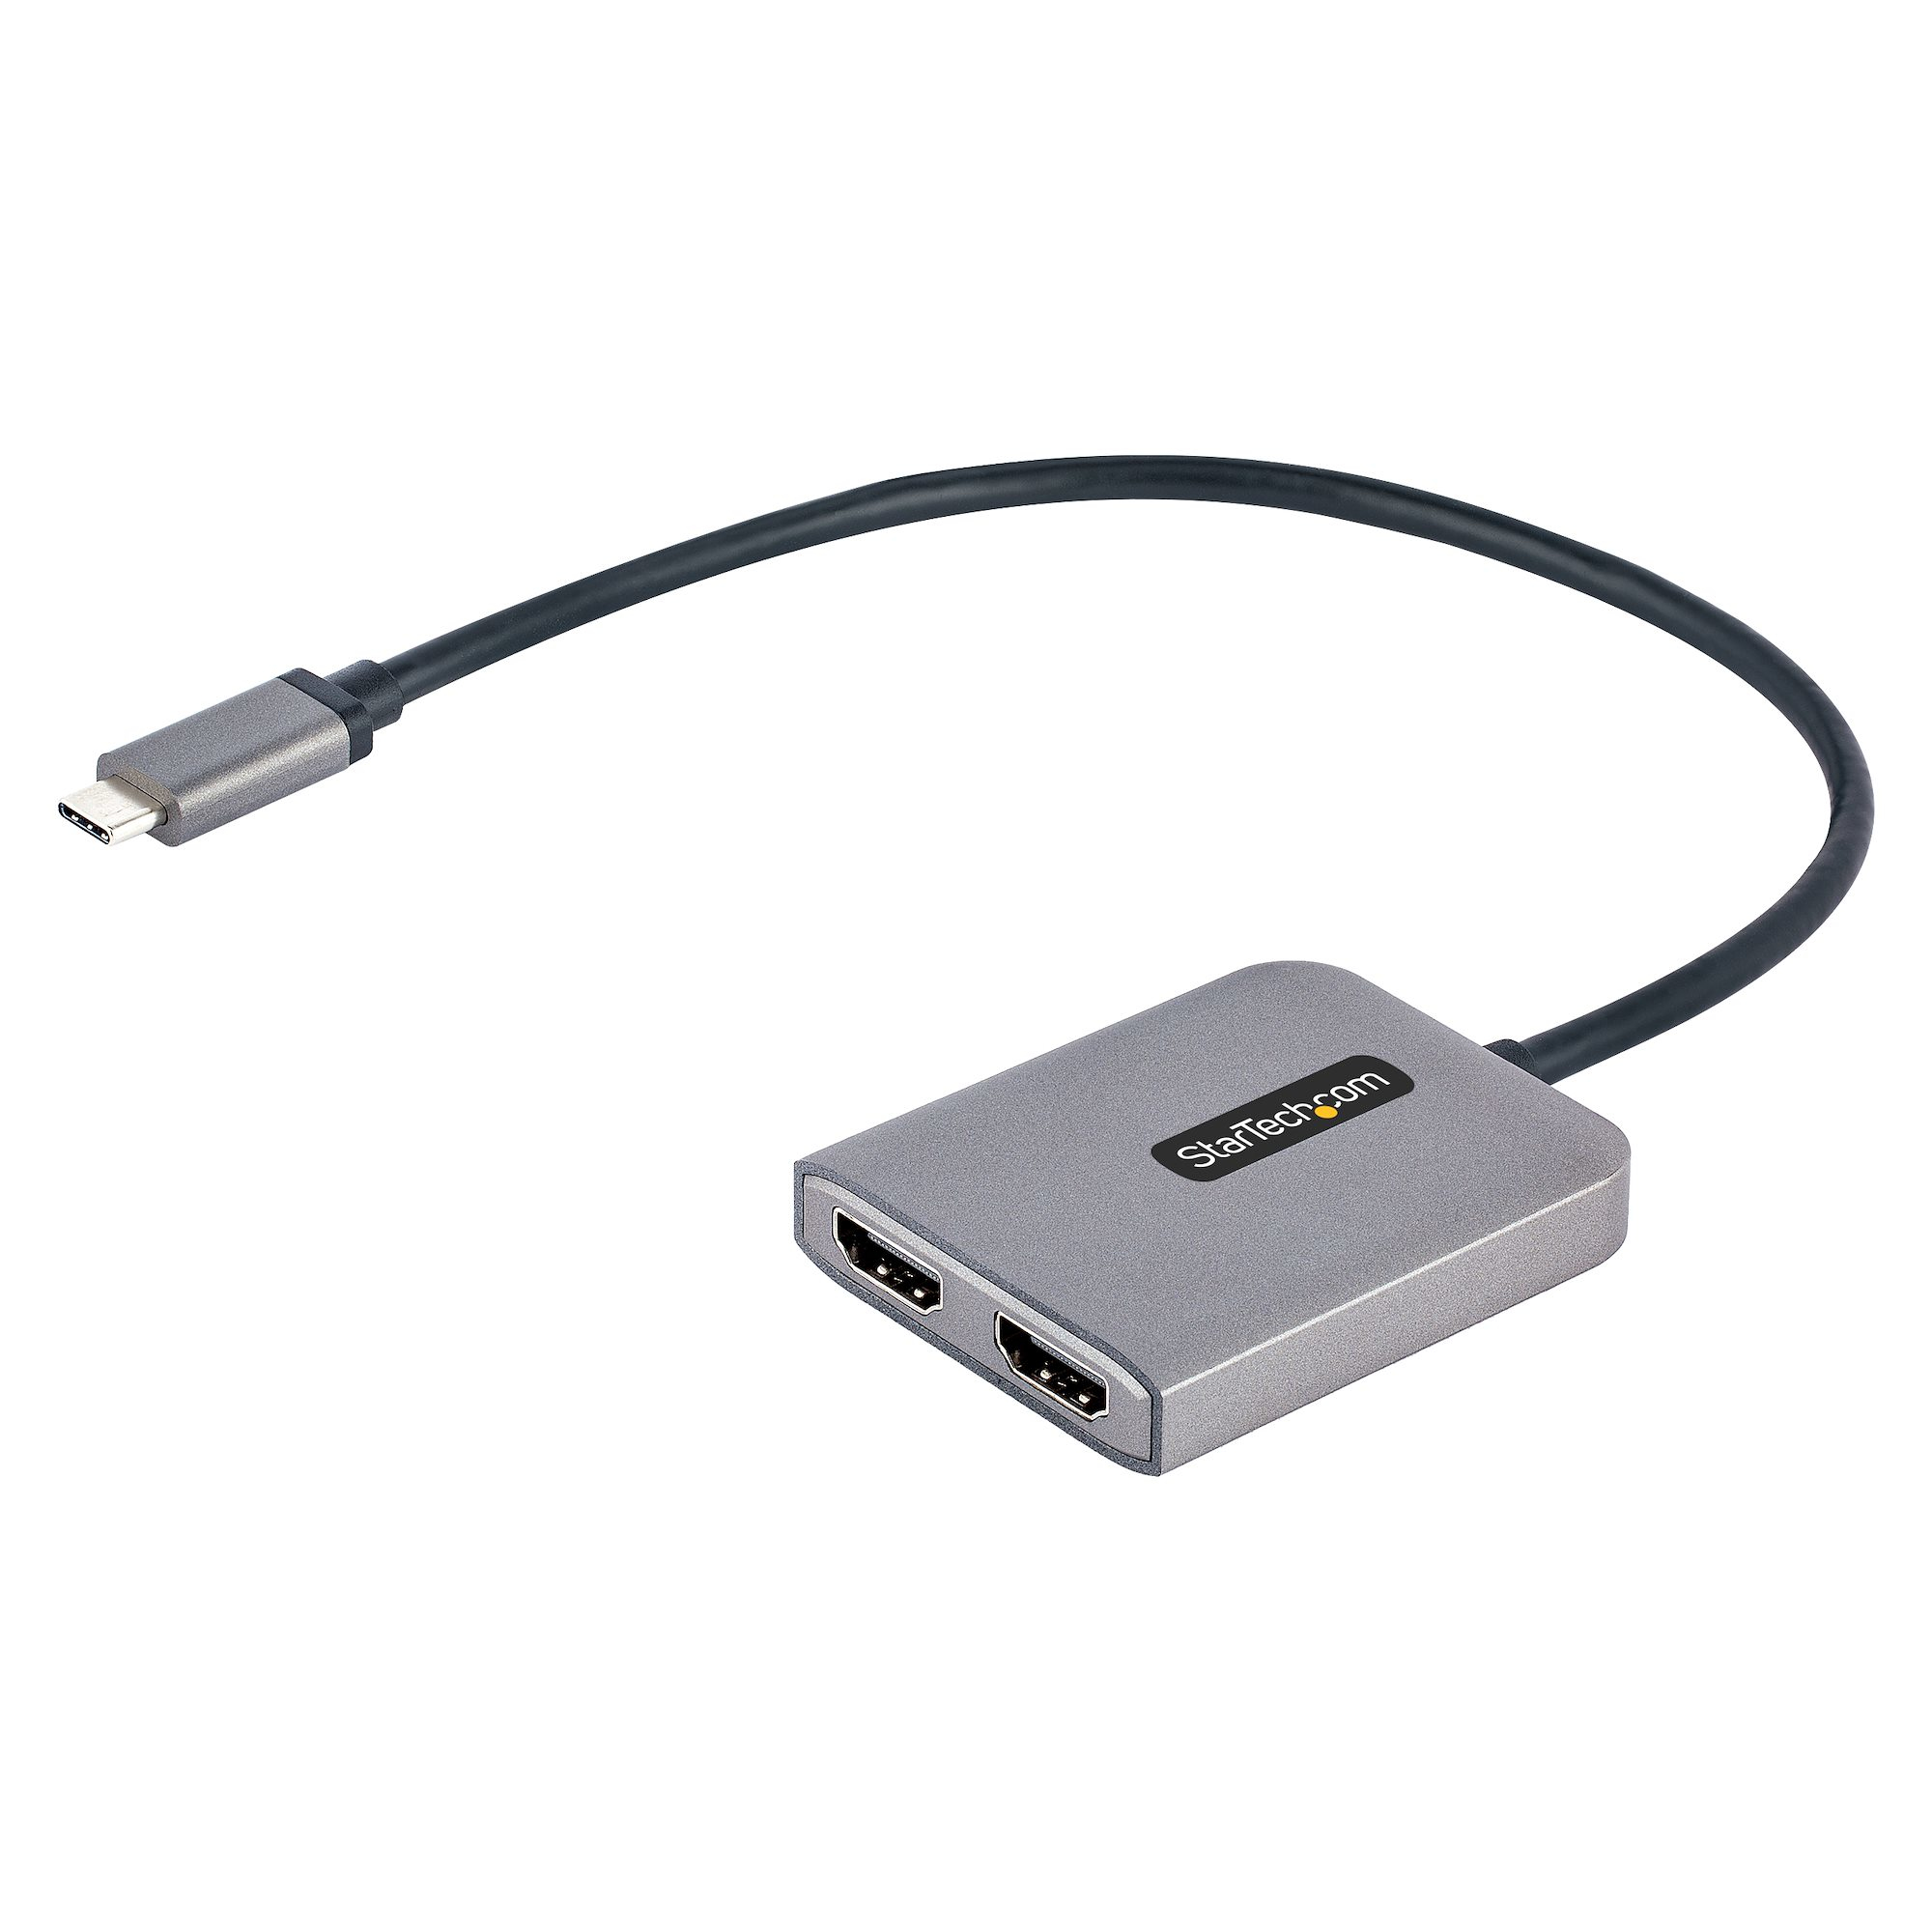 Image of StarTech.com Adattatore USB-C HDMI - Hub USB C MST a Doppio HDMI 4K 60Hz - Convertitore USB Type-C a Multi Monitor HDMI per Notebook con cavo da 30 cm - Splitter HDMI / Hub HDMI Multi-Stream Trasport, HDR